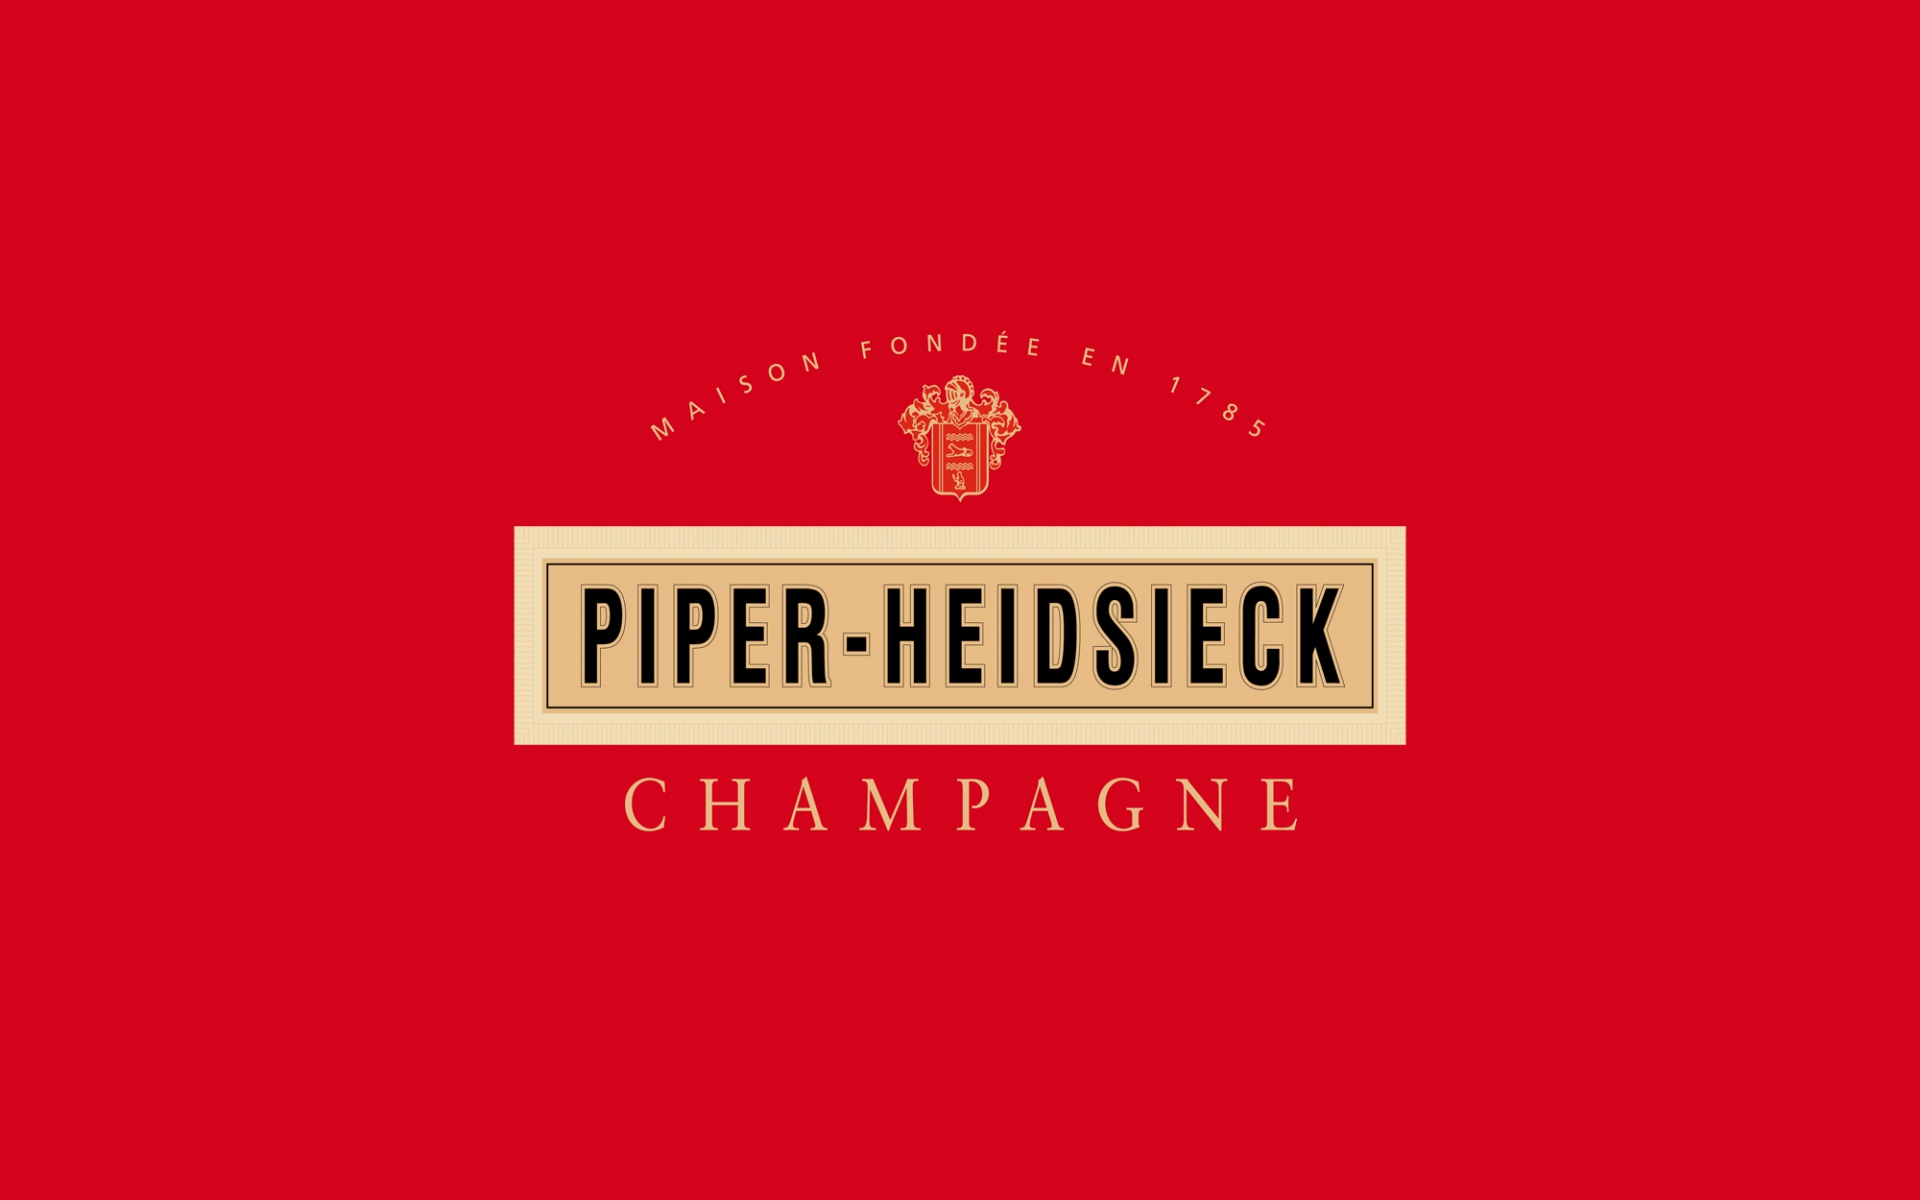 Картинки Piper heidsieck, 1907, шампанское, дорогой, франция фото и обои на рабочий стол